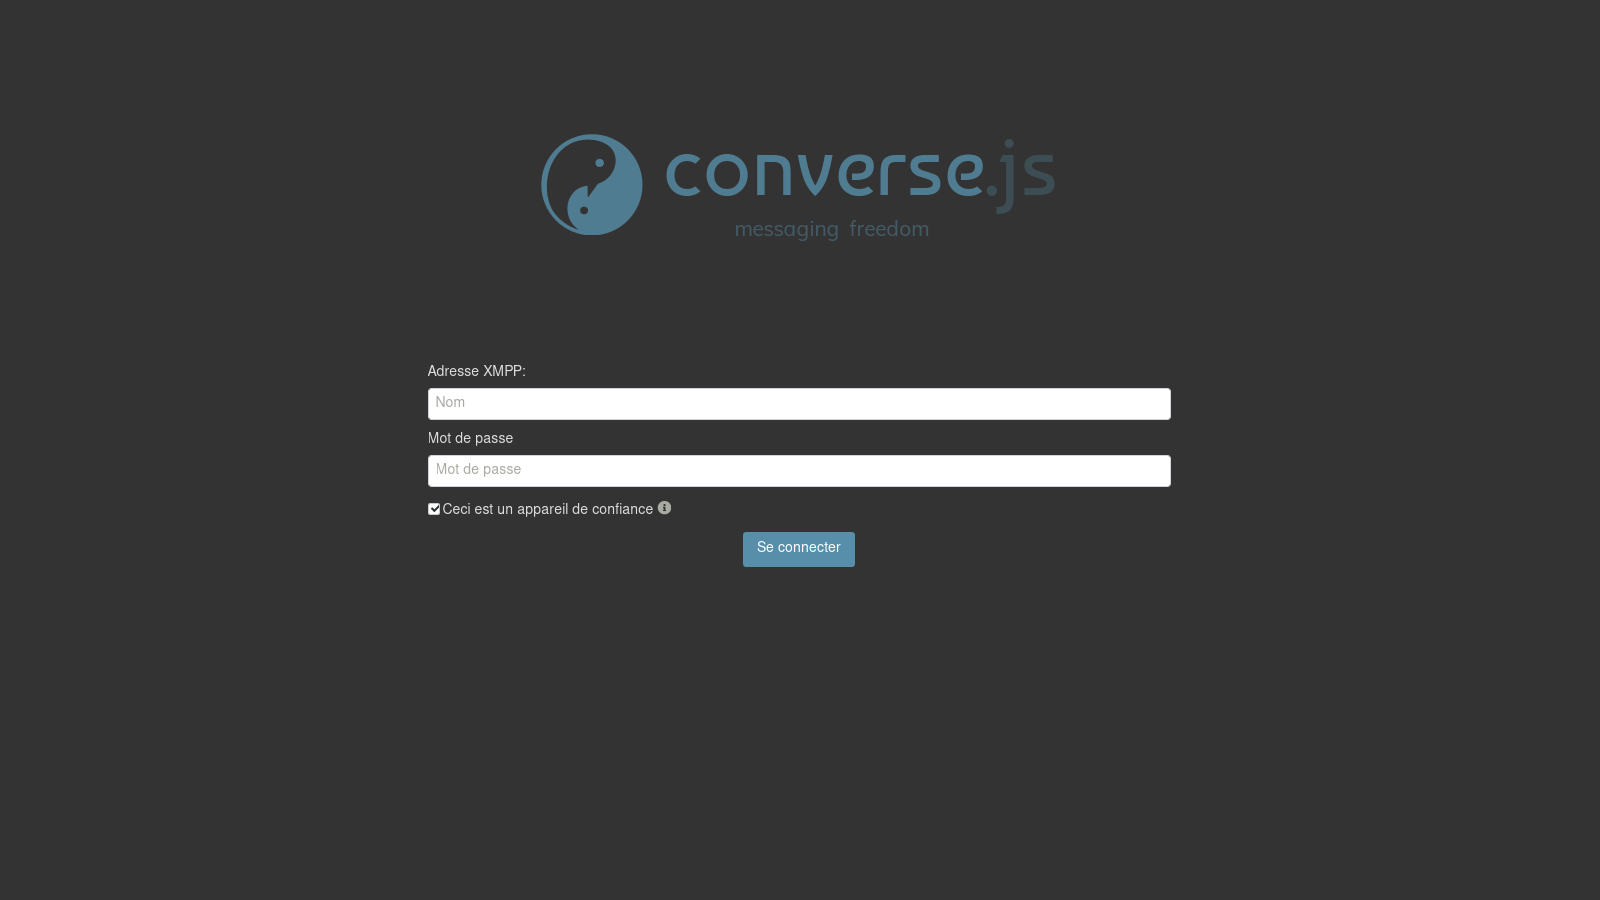 capture d'écran montrant la page de connexion de Converse.js